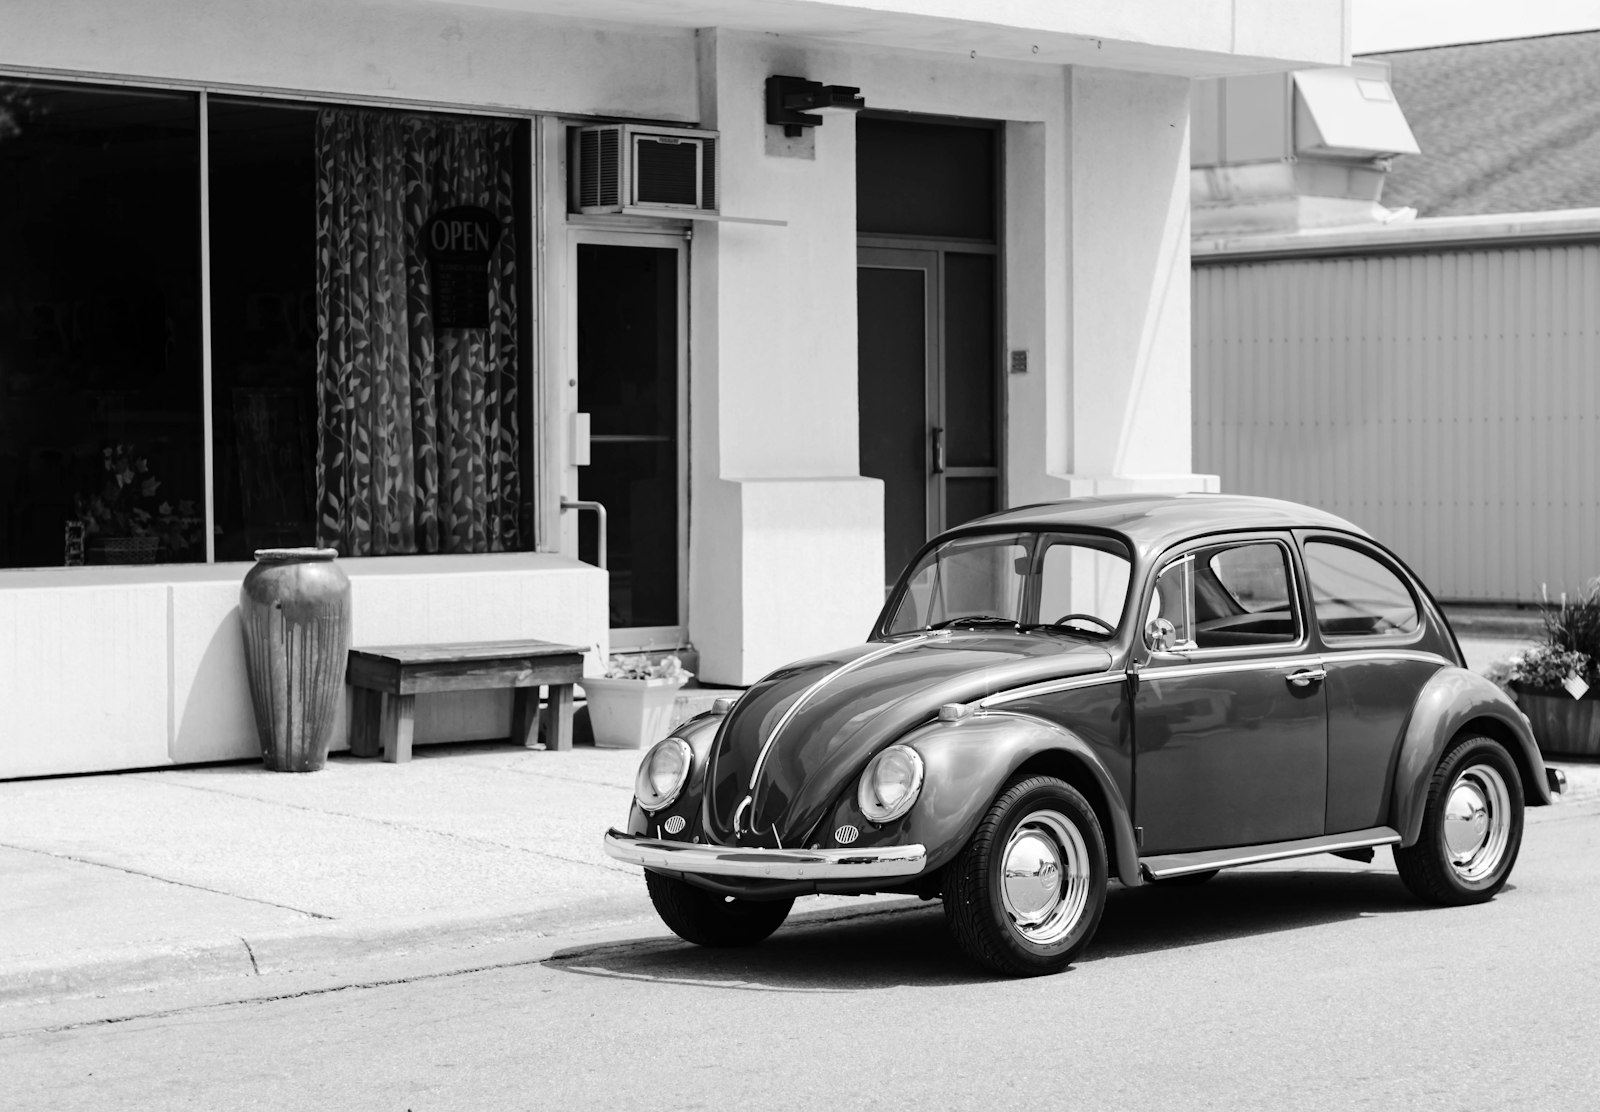 Nikon AF Nikkor 50mm F1.4D sample photo. Gray volkswagen beetle on photography